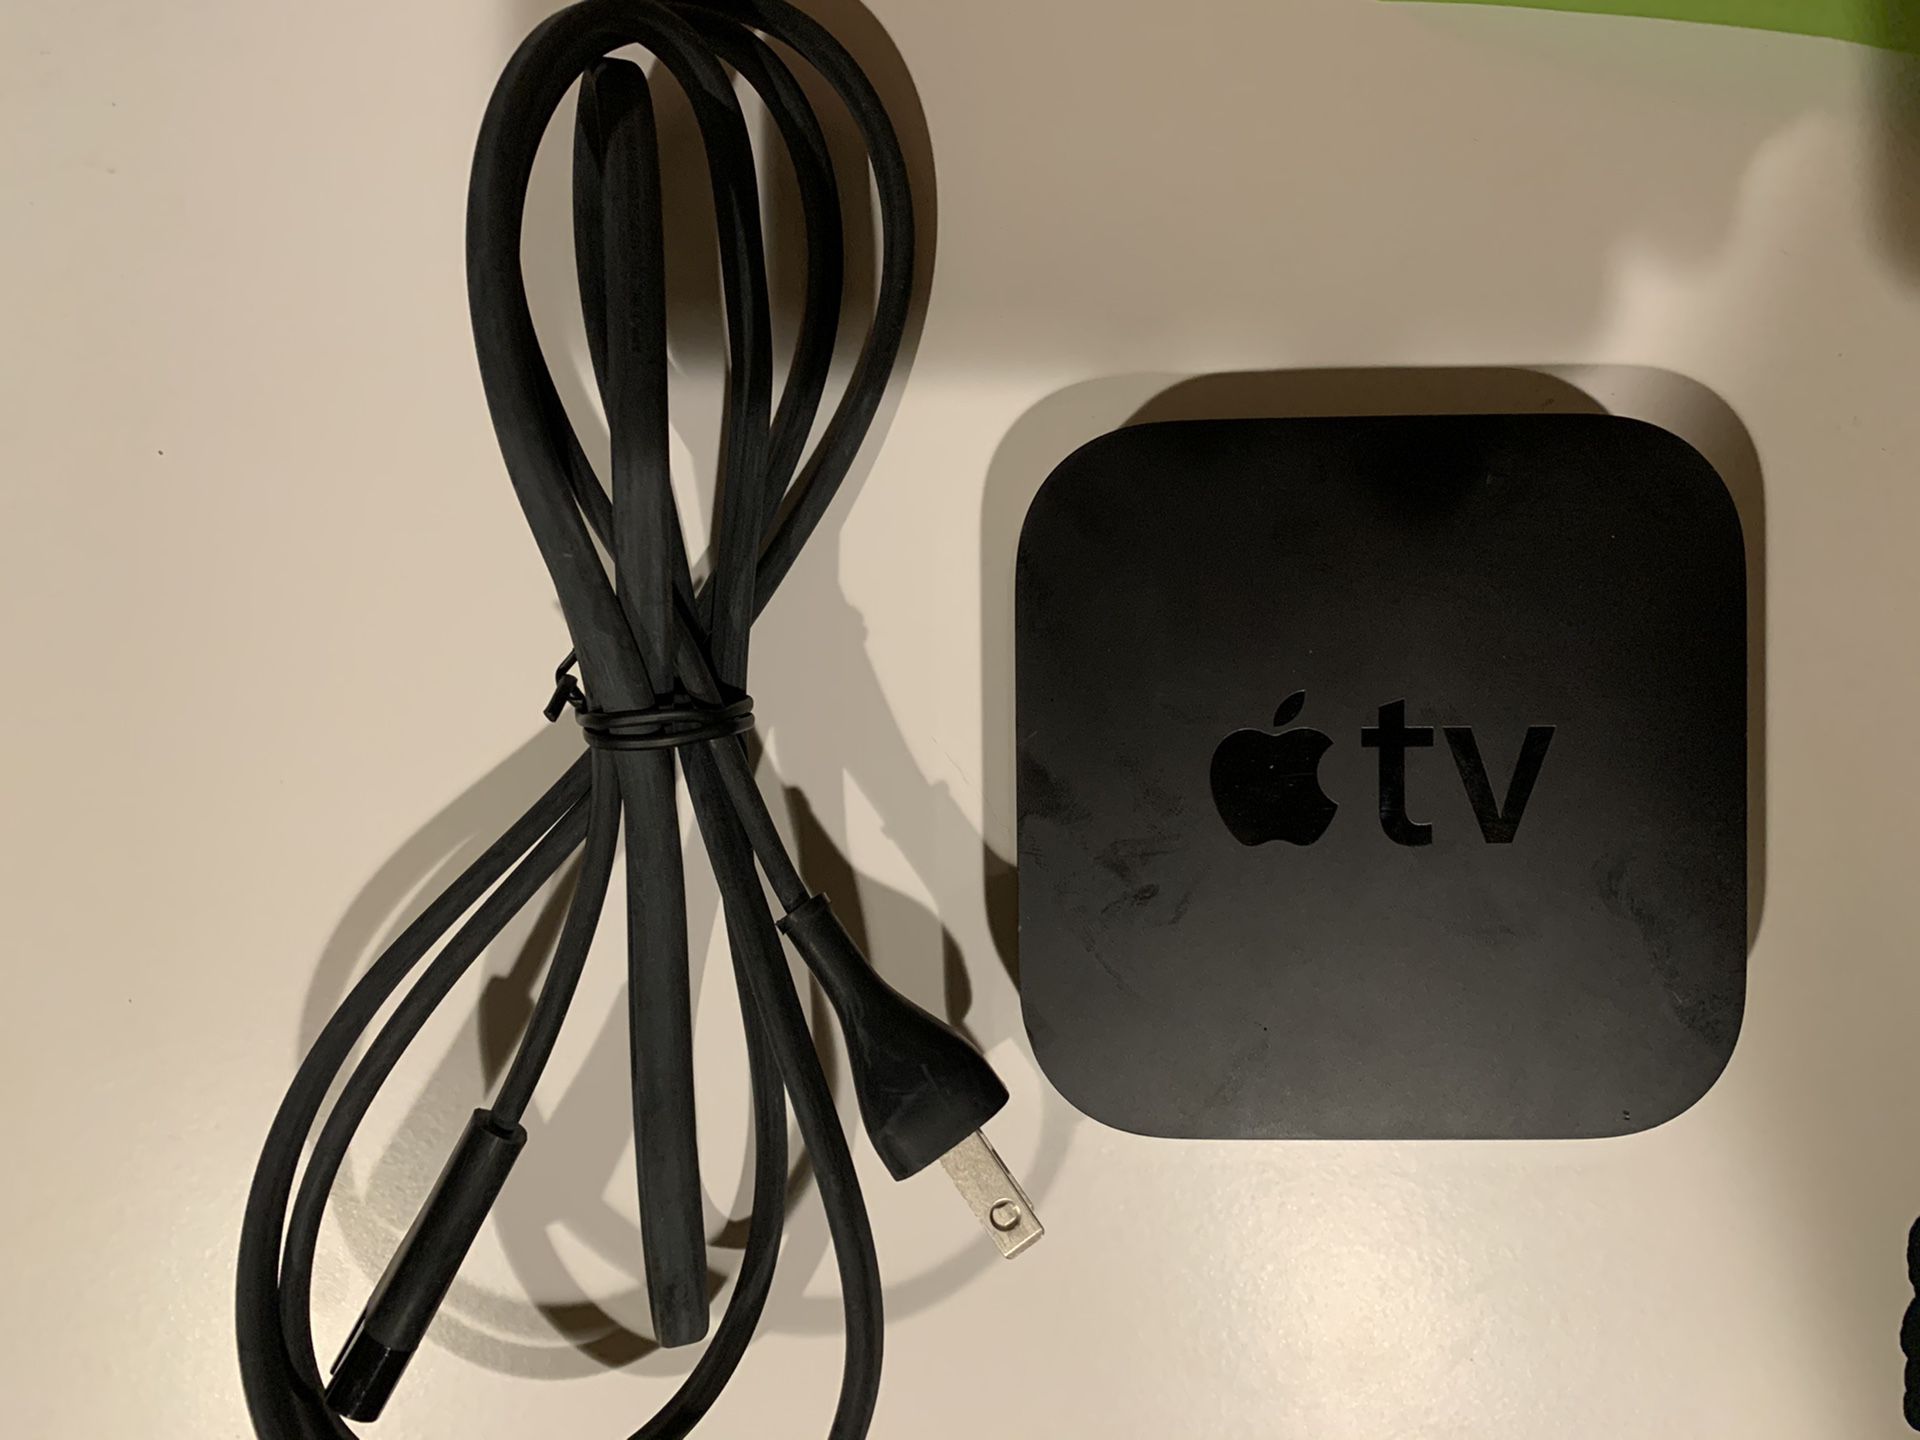 Apple TV (3rd Generation) 8GB HD Media Streamer - A1469